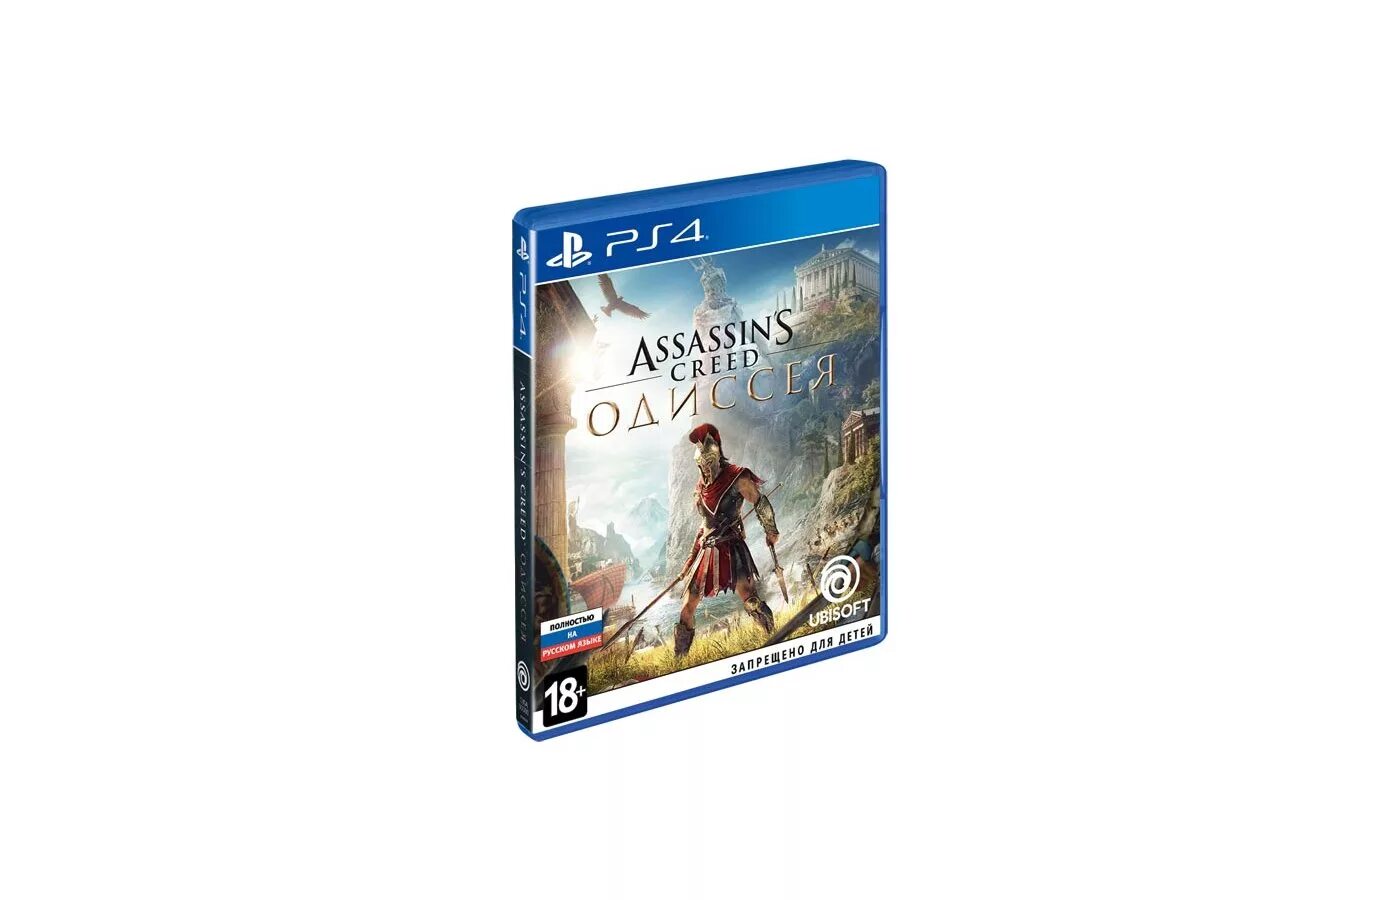 Ассасин Крид Одиссея диск ПС 4. Диск на ПС 4 ассасин Крид Odyssey. Assassin's Creed Одиссея ps4. Ps4 диск Assassins Creed. Assassin odyssey ps4